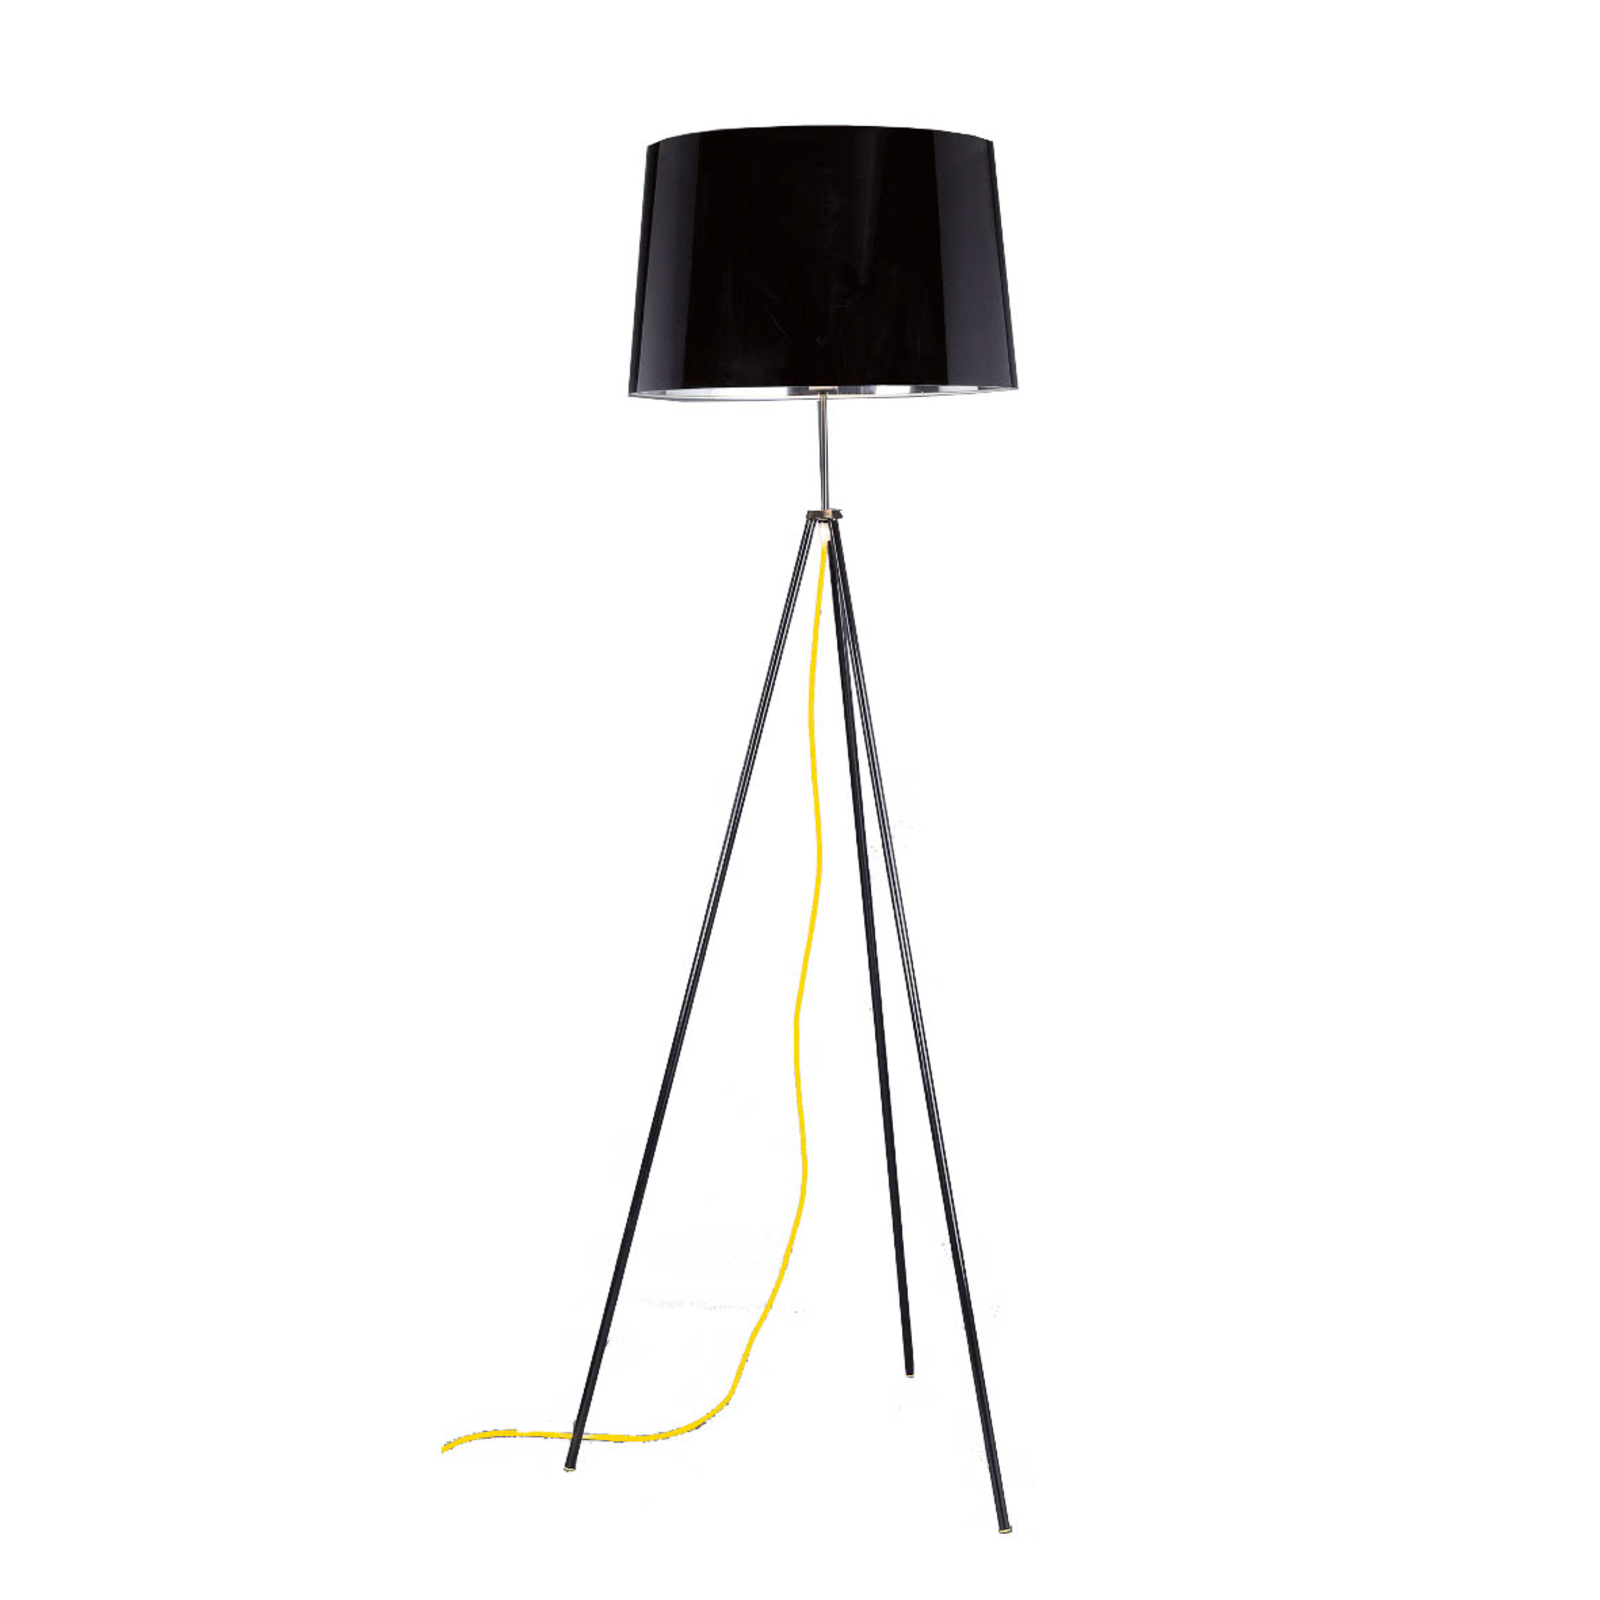 Aluminor Tropic állólámpa fekete, kábel sárga